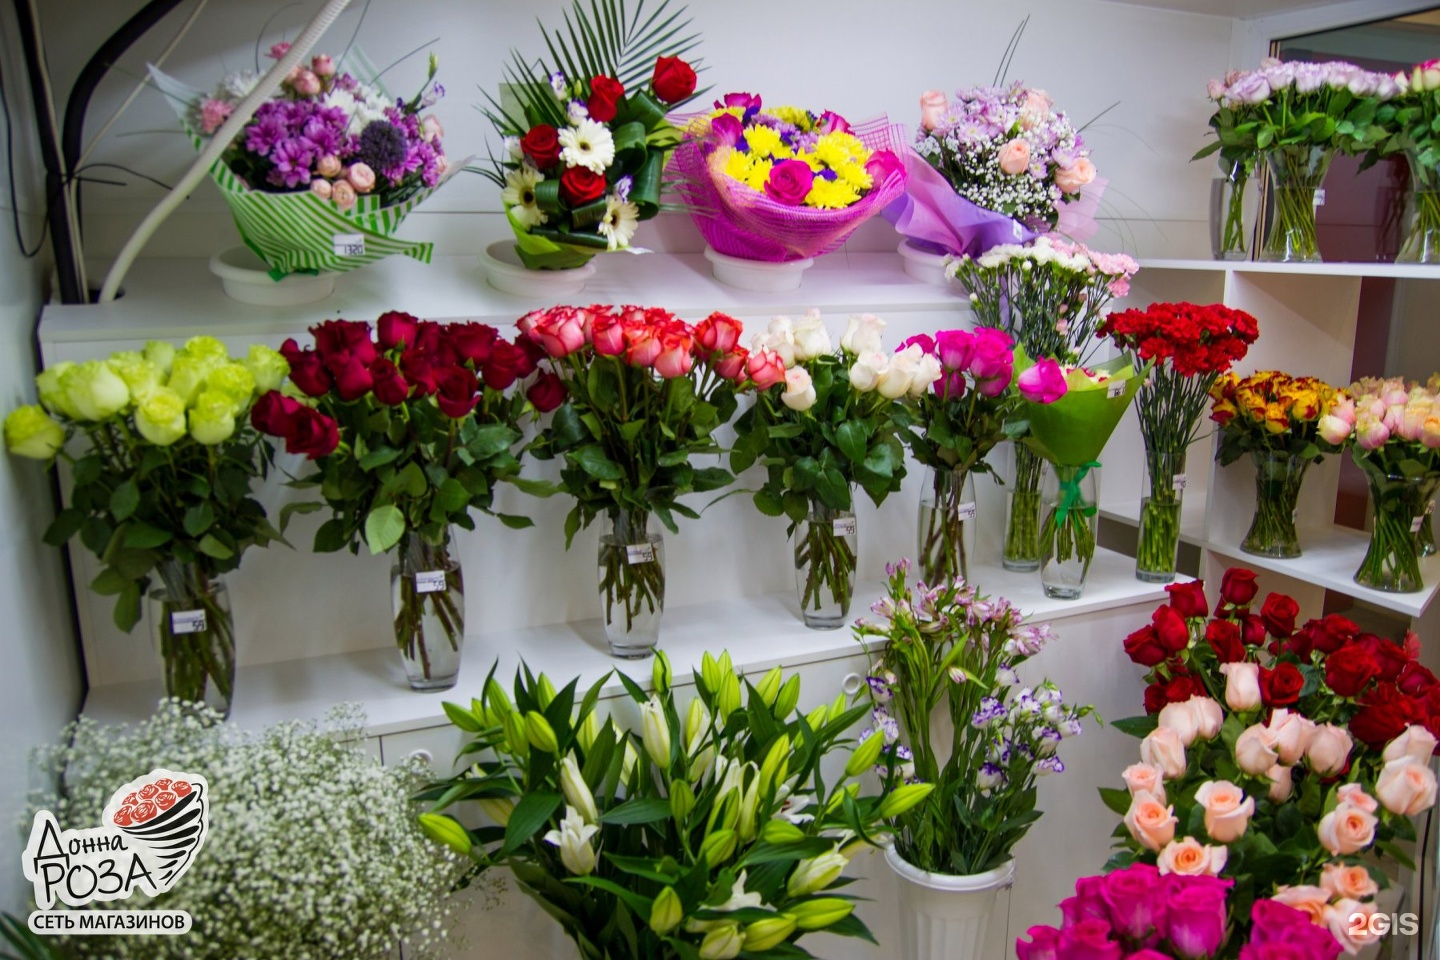 Цветочный салон Донна роза, Саяногорск